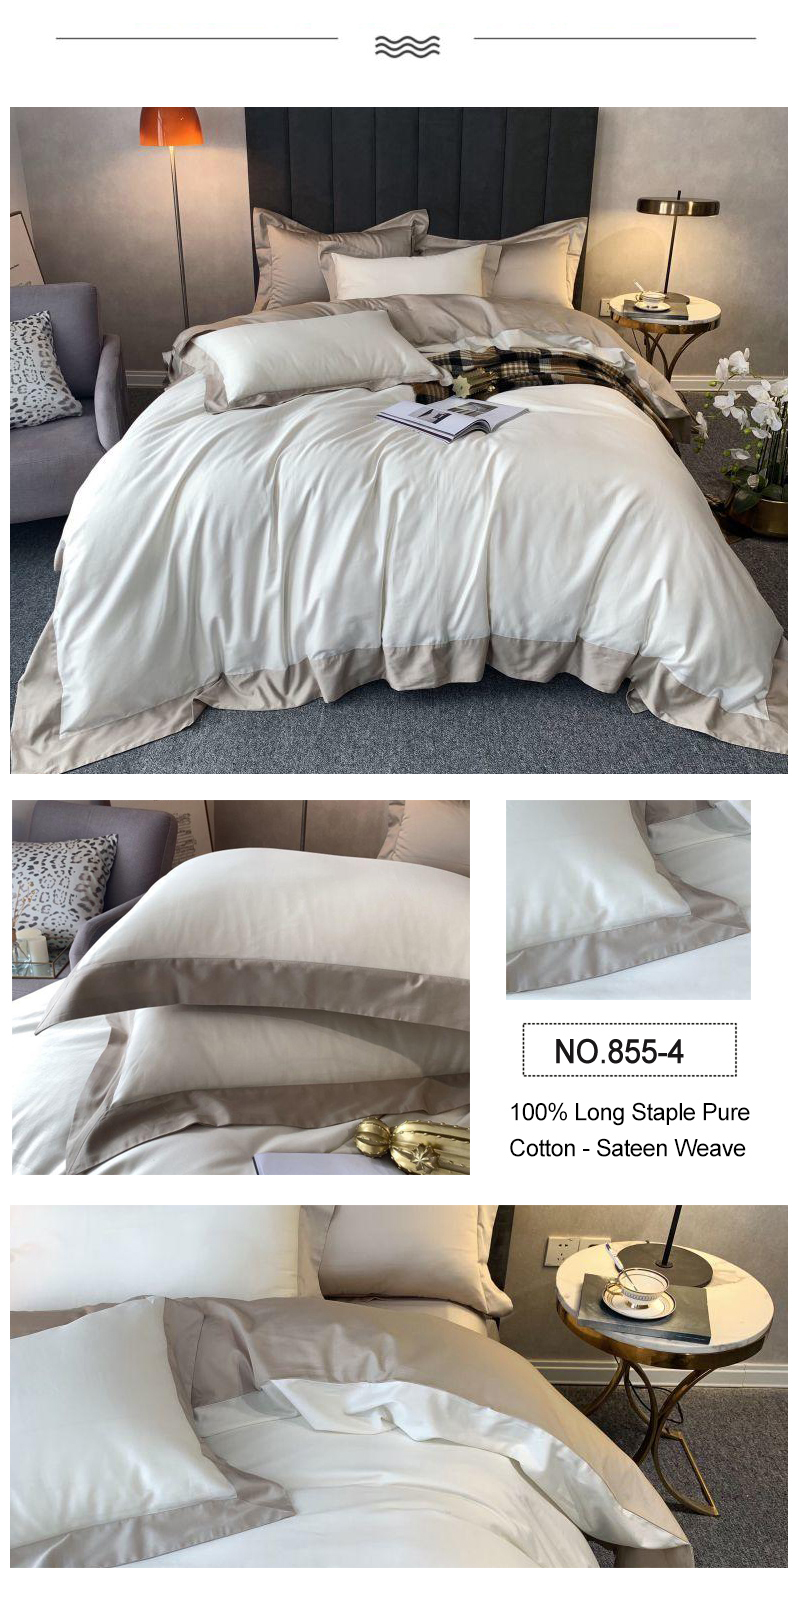 Bedding Hilton Hotels Linen 100% Long Staple Cotton